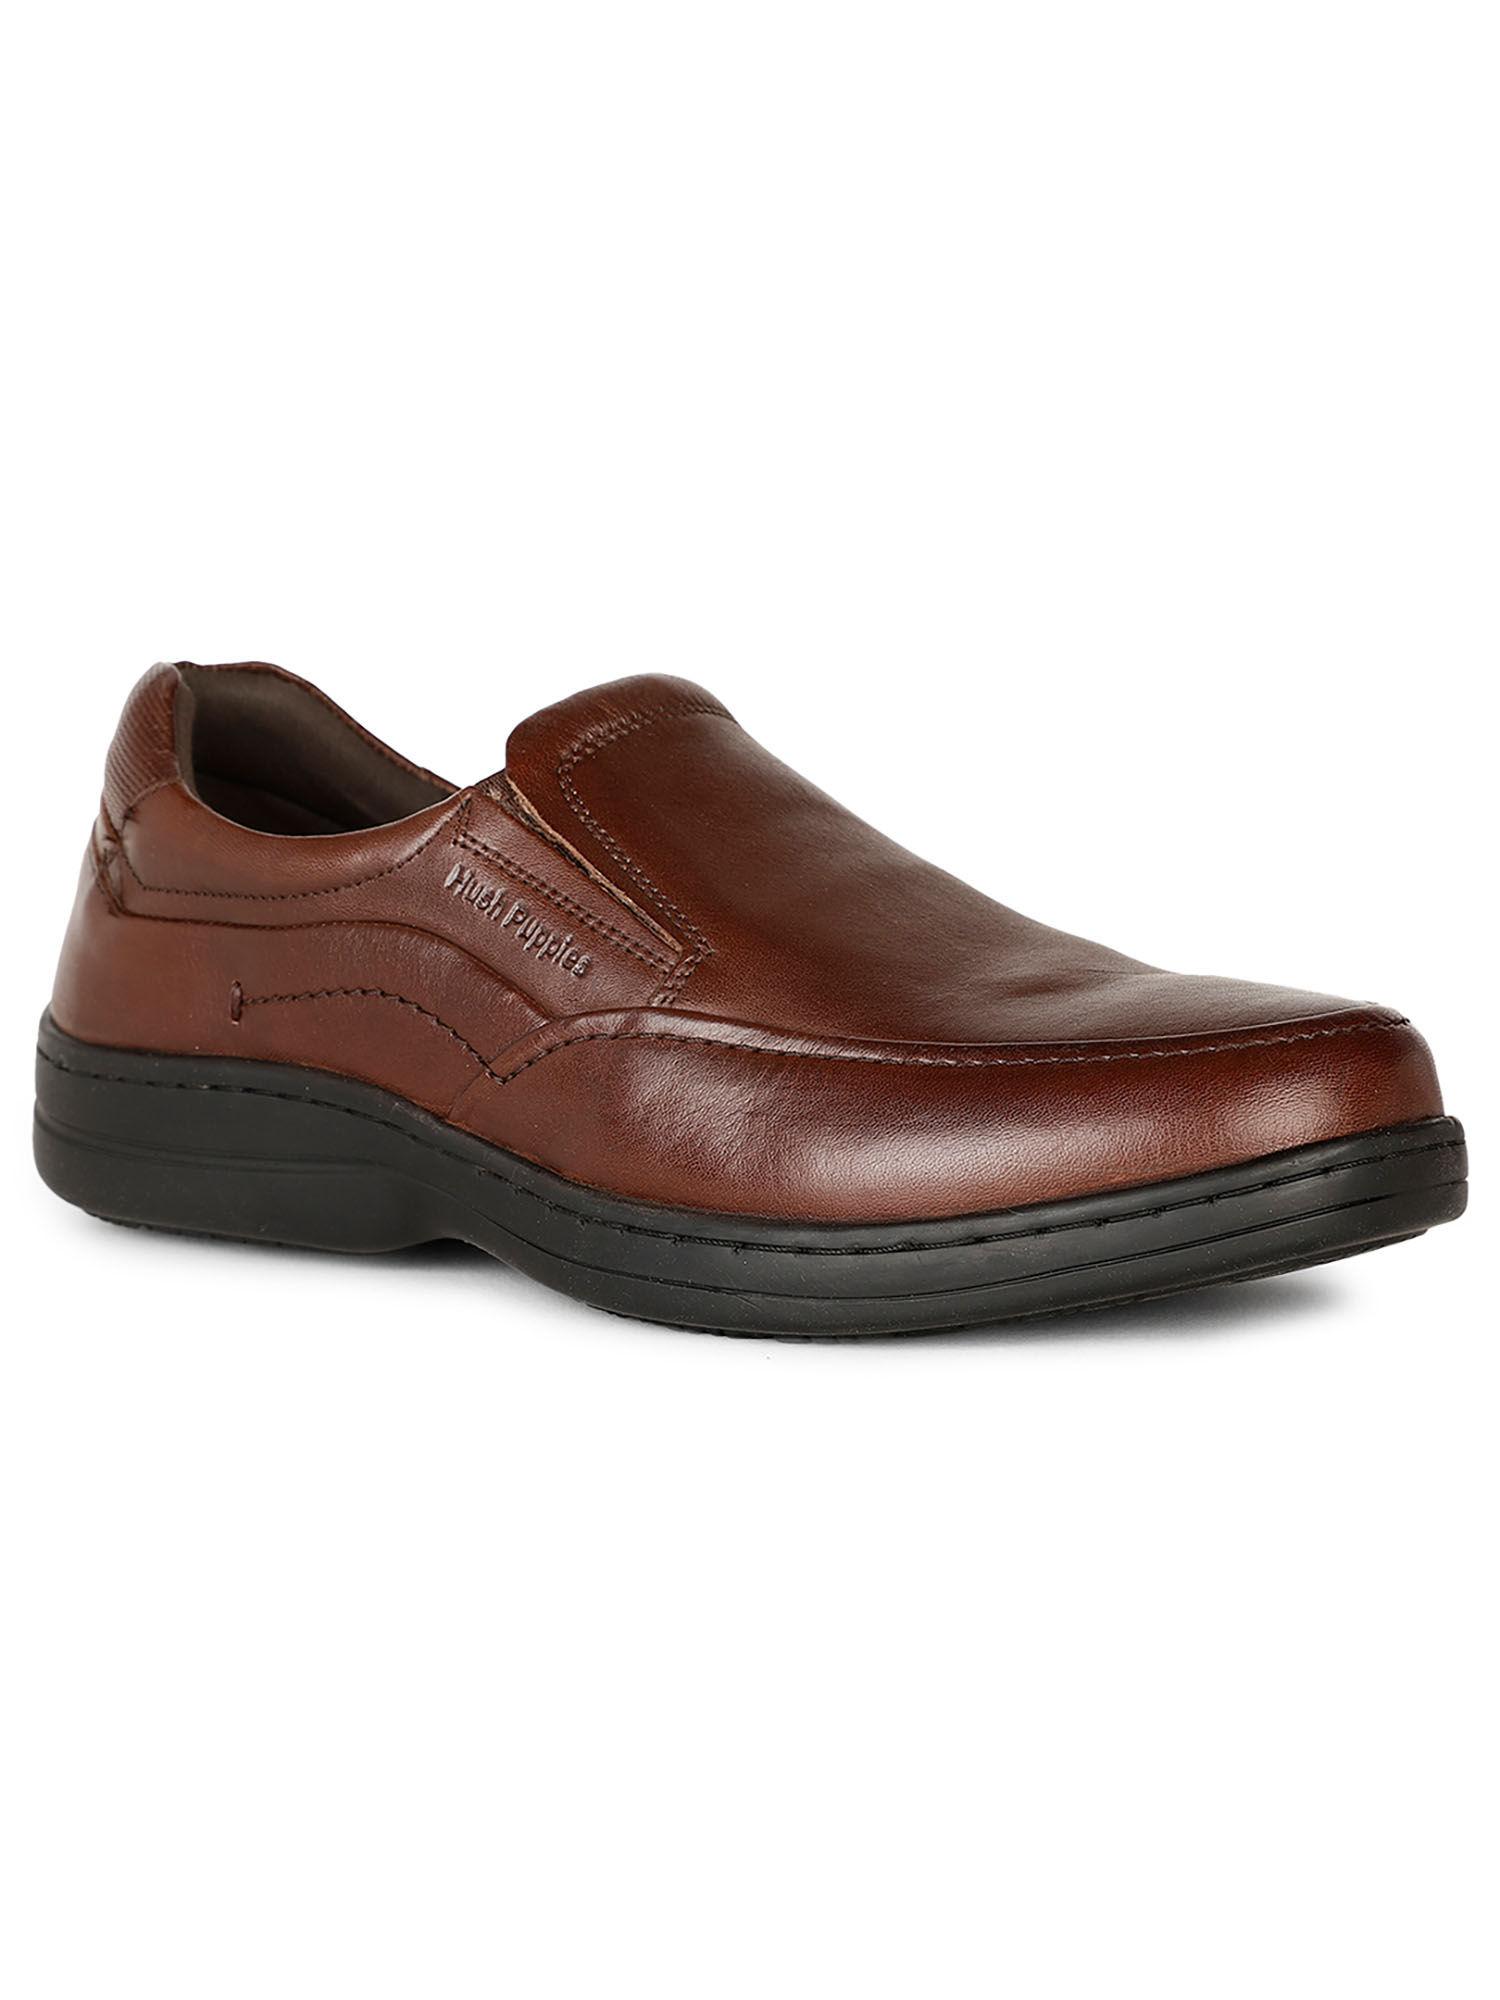 men brown slip on formal shoes